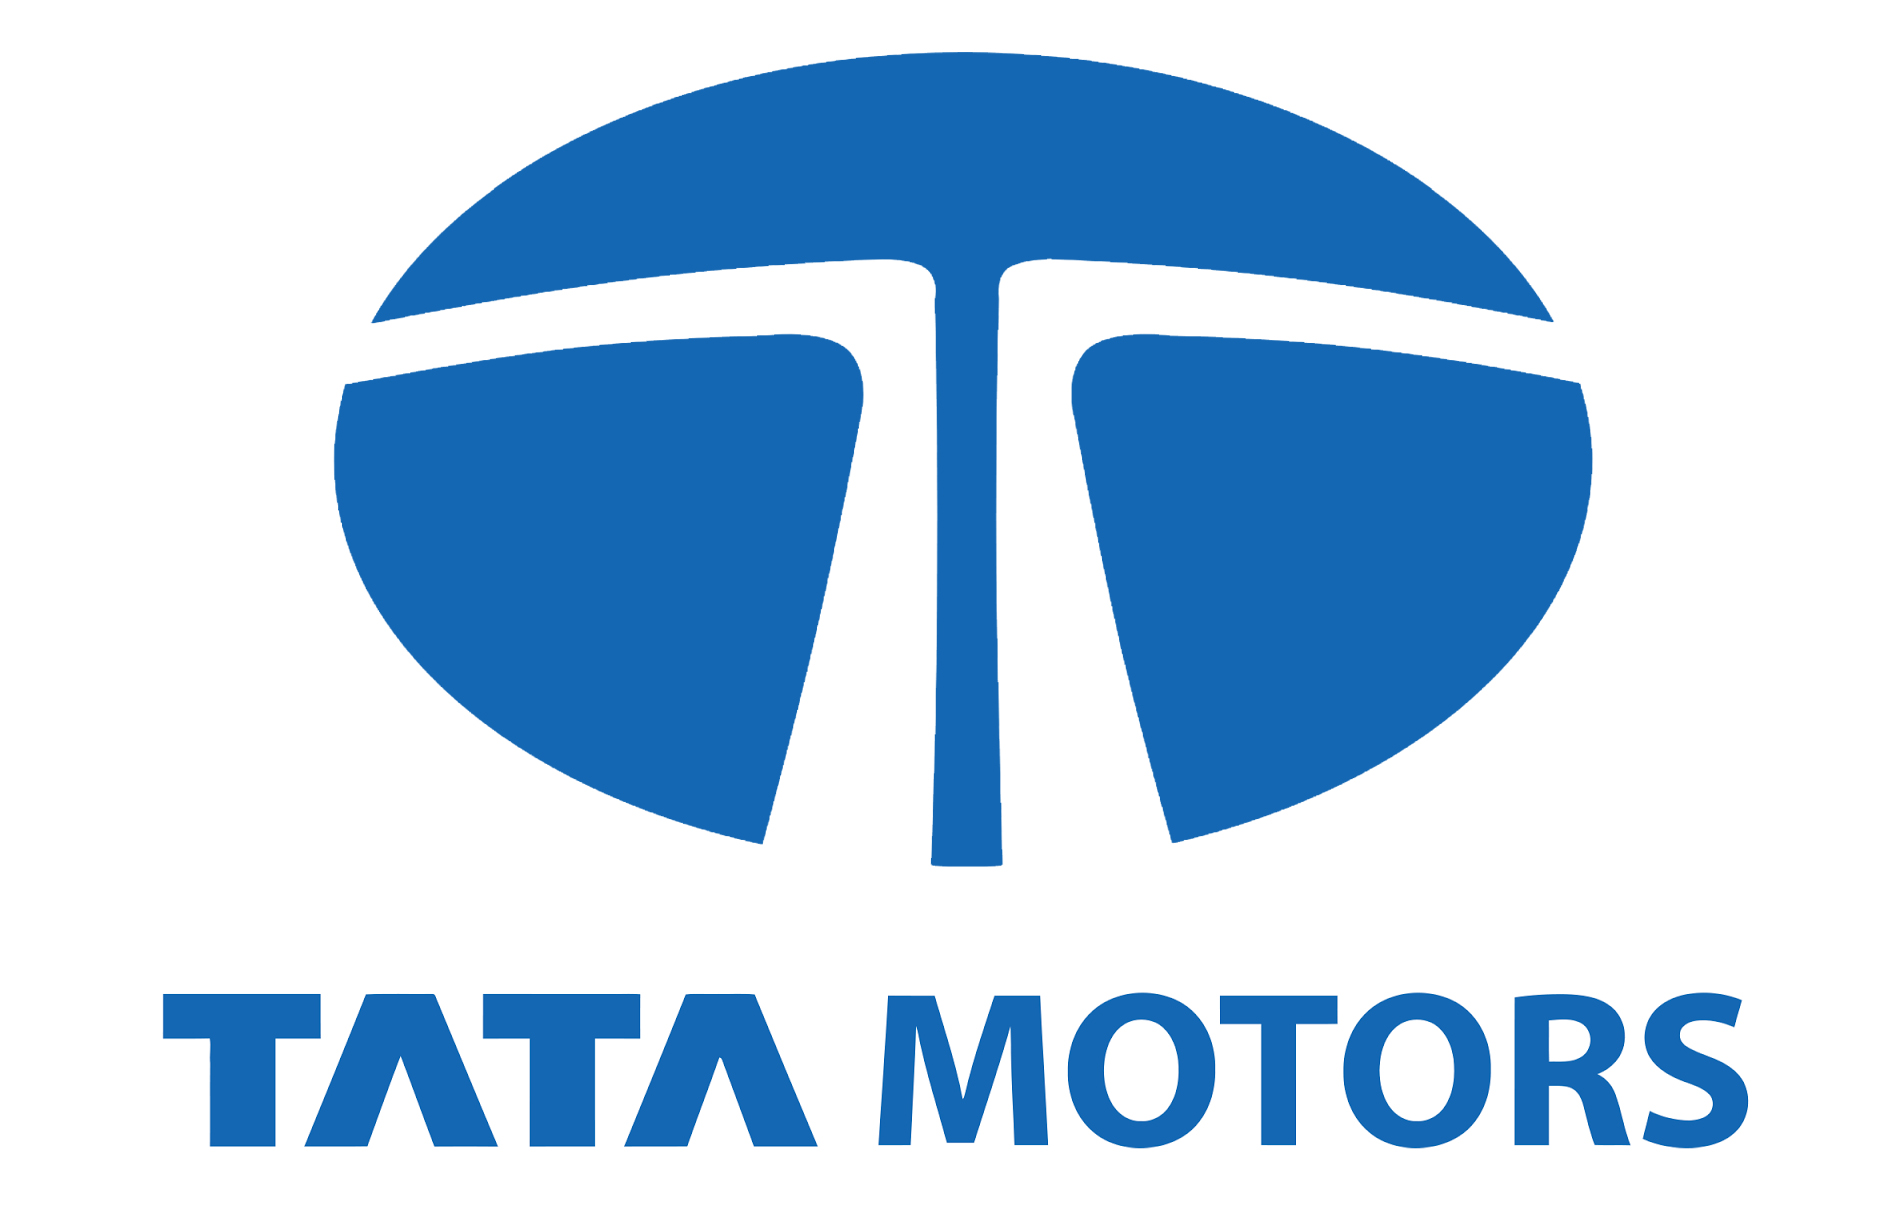 Tata Motors Cars Showroom - Marina Motors|Show Room|Automotive